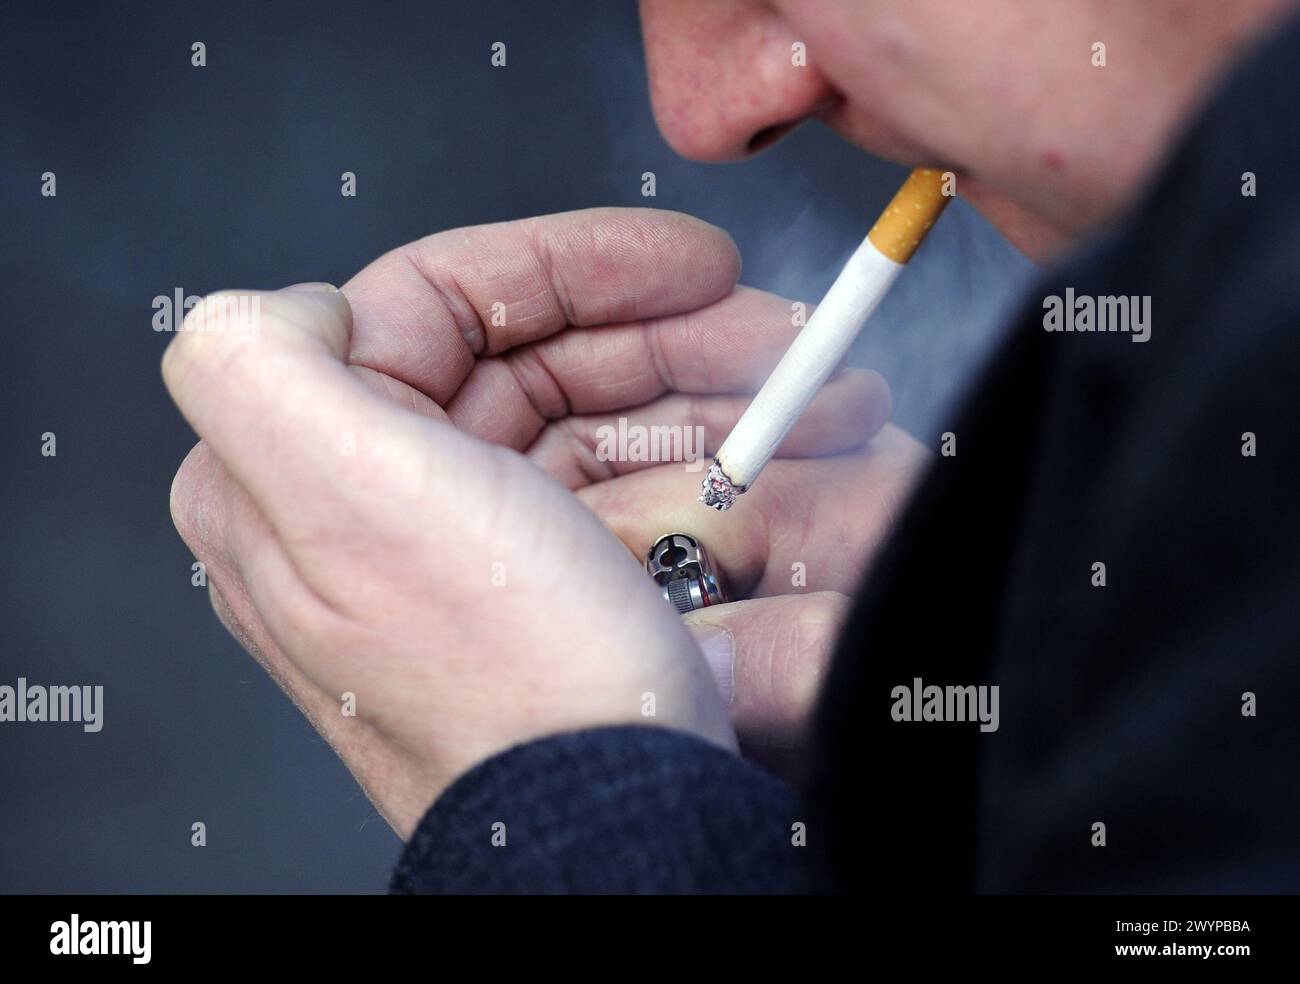 FOTO VON Einem MODELL Aktenfoto vom 03/13 eines rauchenden Mannes. Laut neuer Forschung könnten fast 11 Milliarden Pfund pro Jahr in Englands Gemeinden freigesetzt und ausgegeben werden, wenn Menschen mit dem Rauchen aufhören. Das Tobacco and Vapes Bill wird den Verkauf von Tabak einschränken, so dass jeder, der dieses Jahr 15 oder jünger wird, ihn niemals legal kaufen kann. Ausgabedatum: Montag, 8. April 2024. Stockfoto